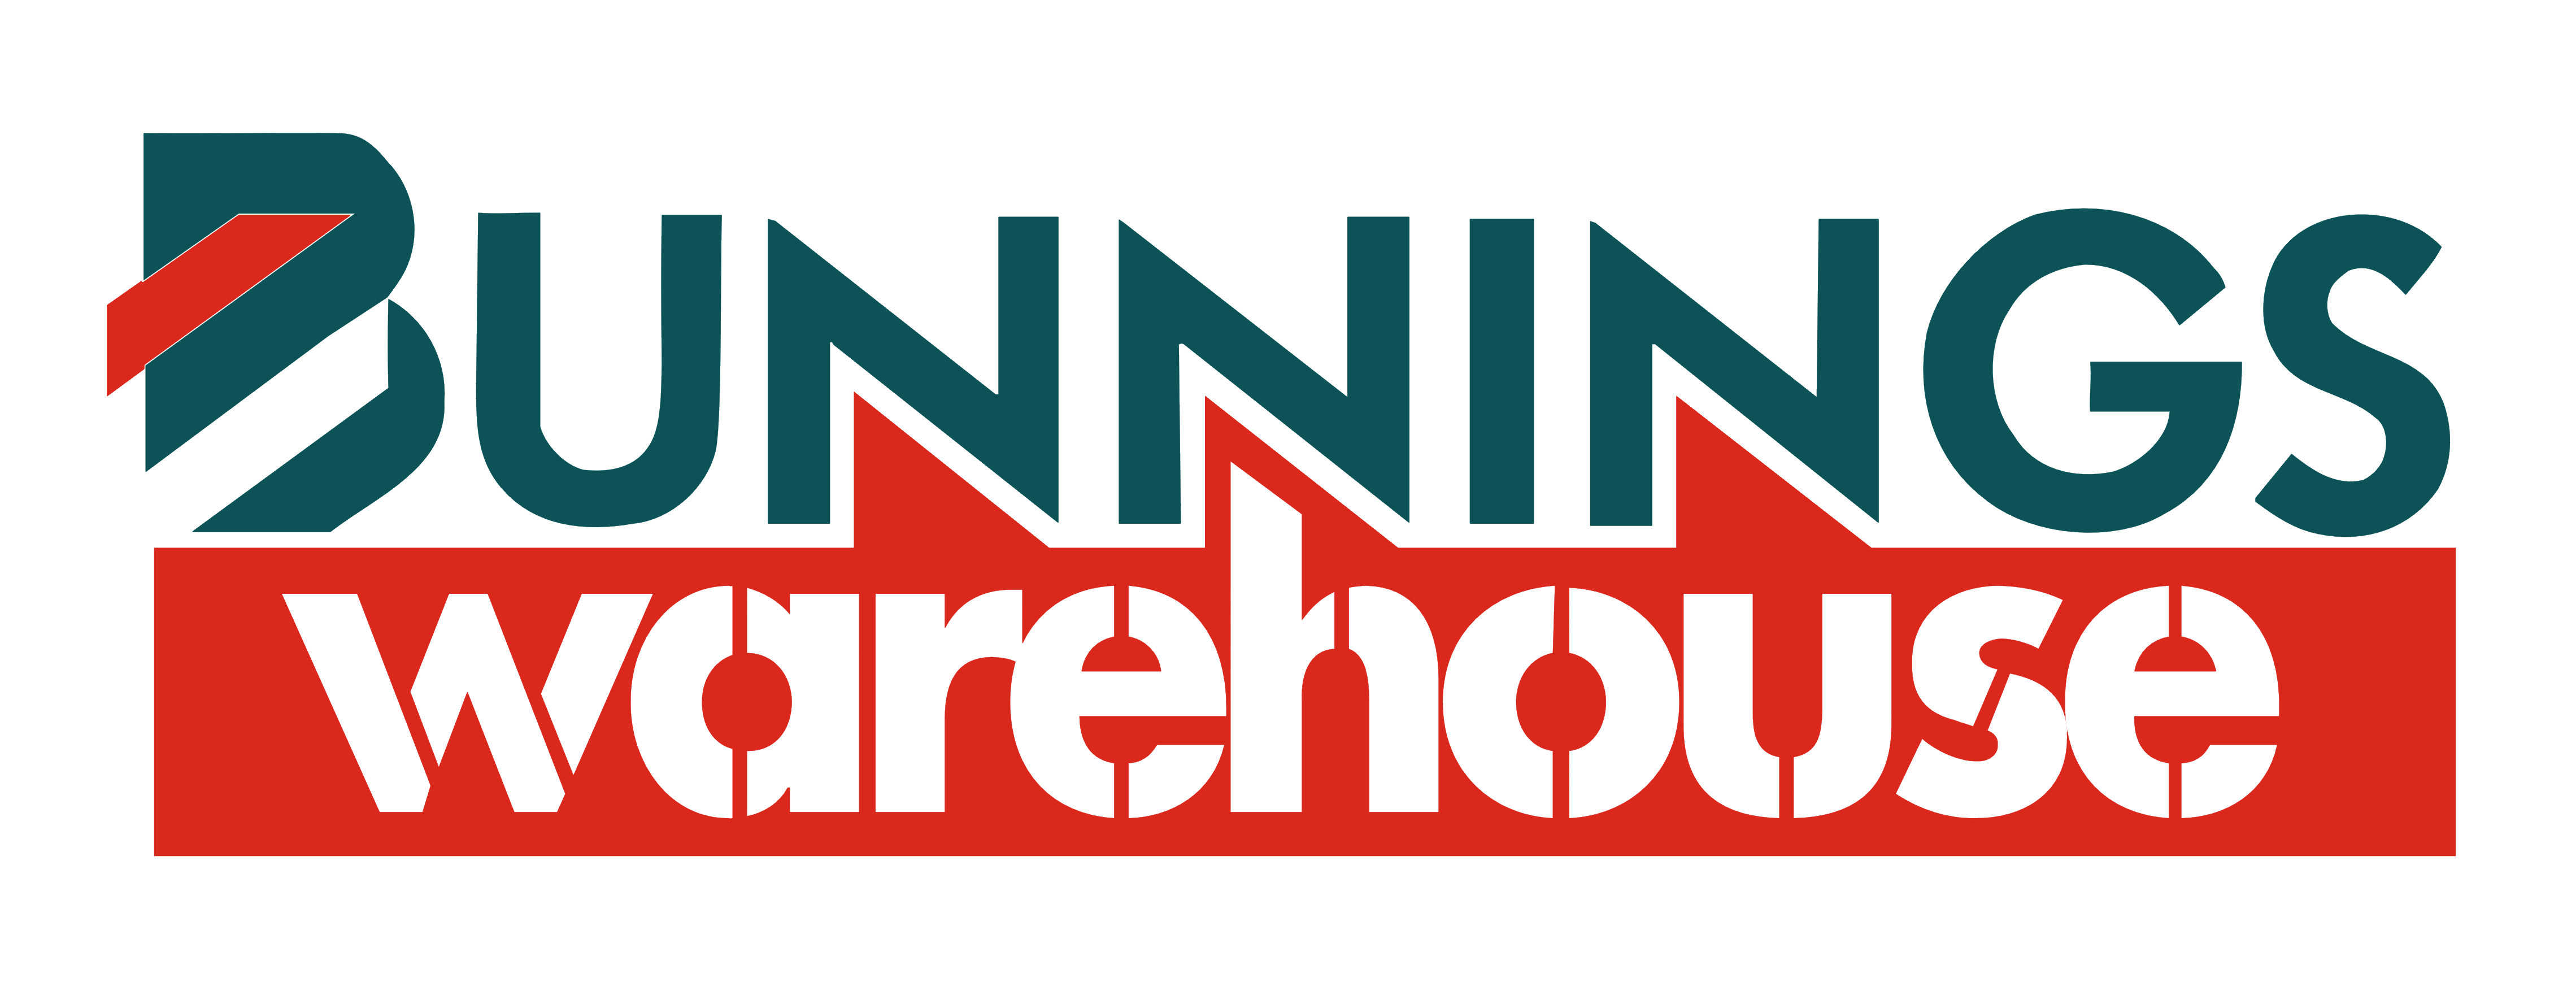 Bunnings Warehouse logo, logotype